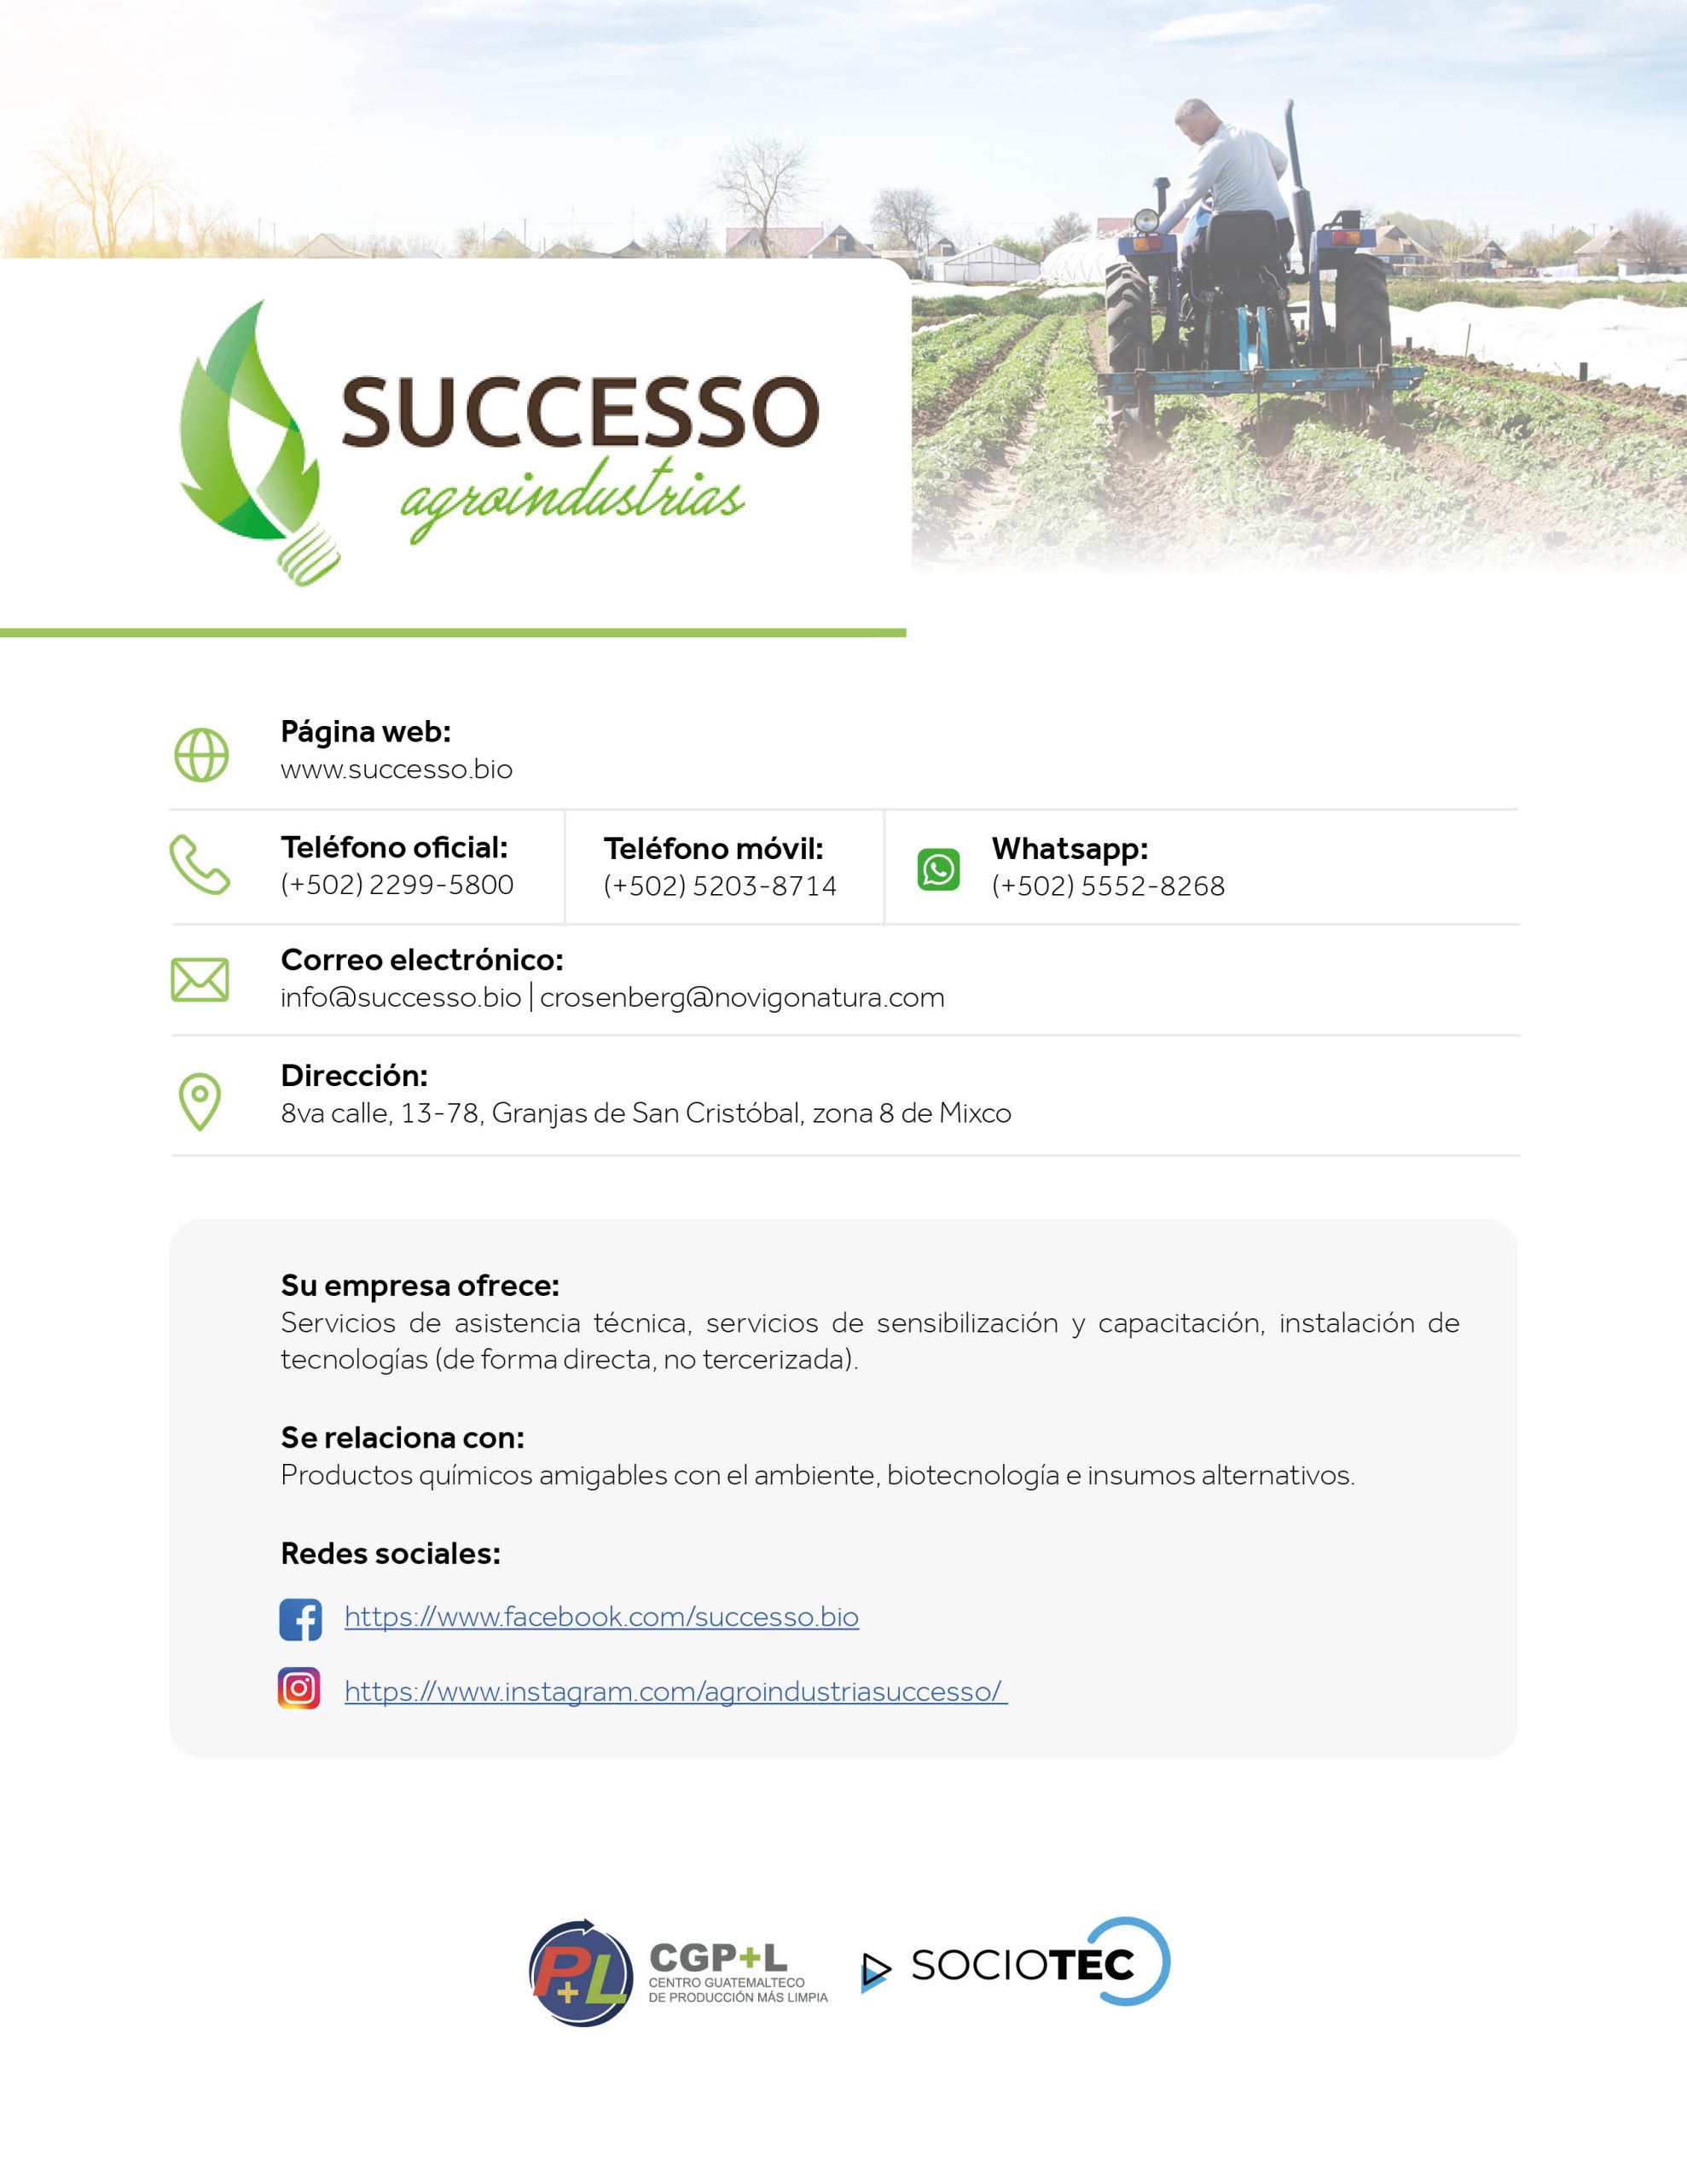 CatálogoSociosTec_Successo